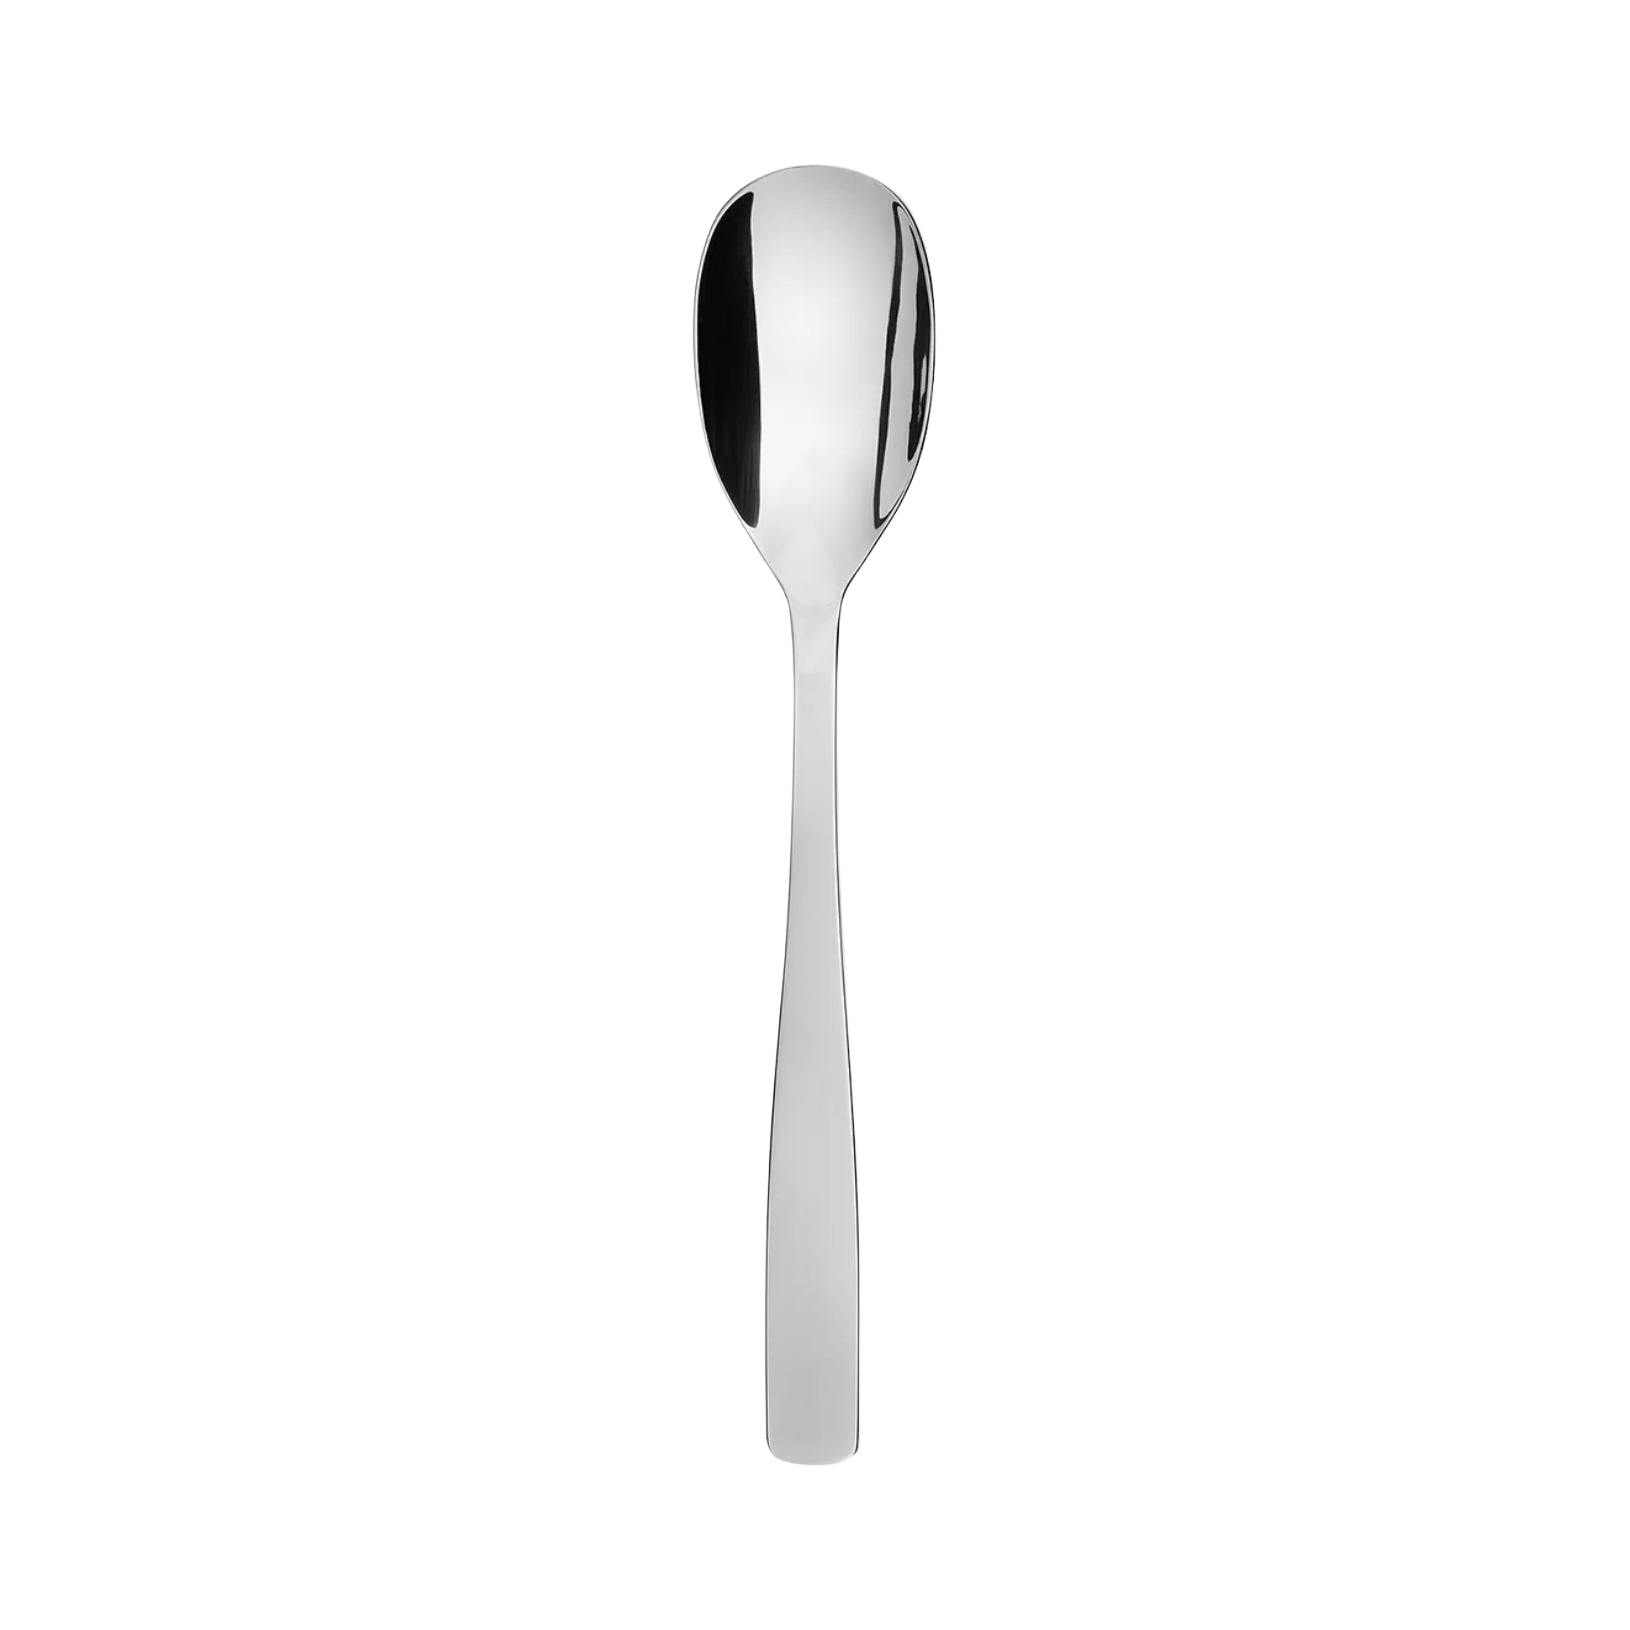 12925 Alessi KNIFEFORKSPOON Serving spoon